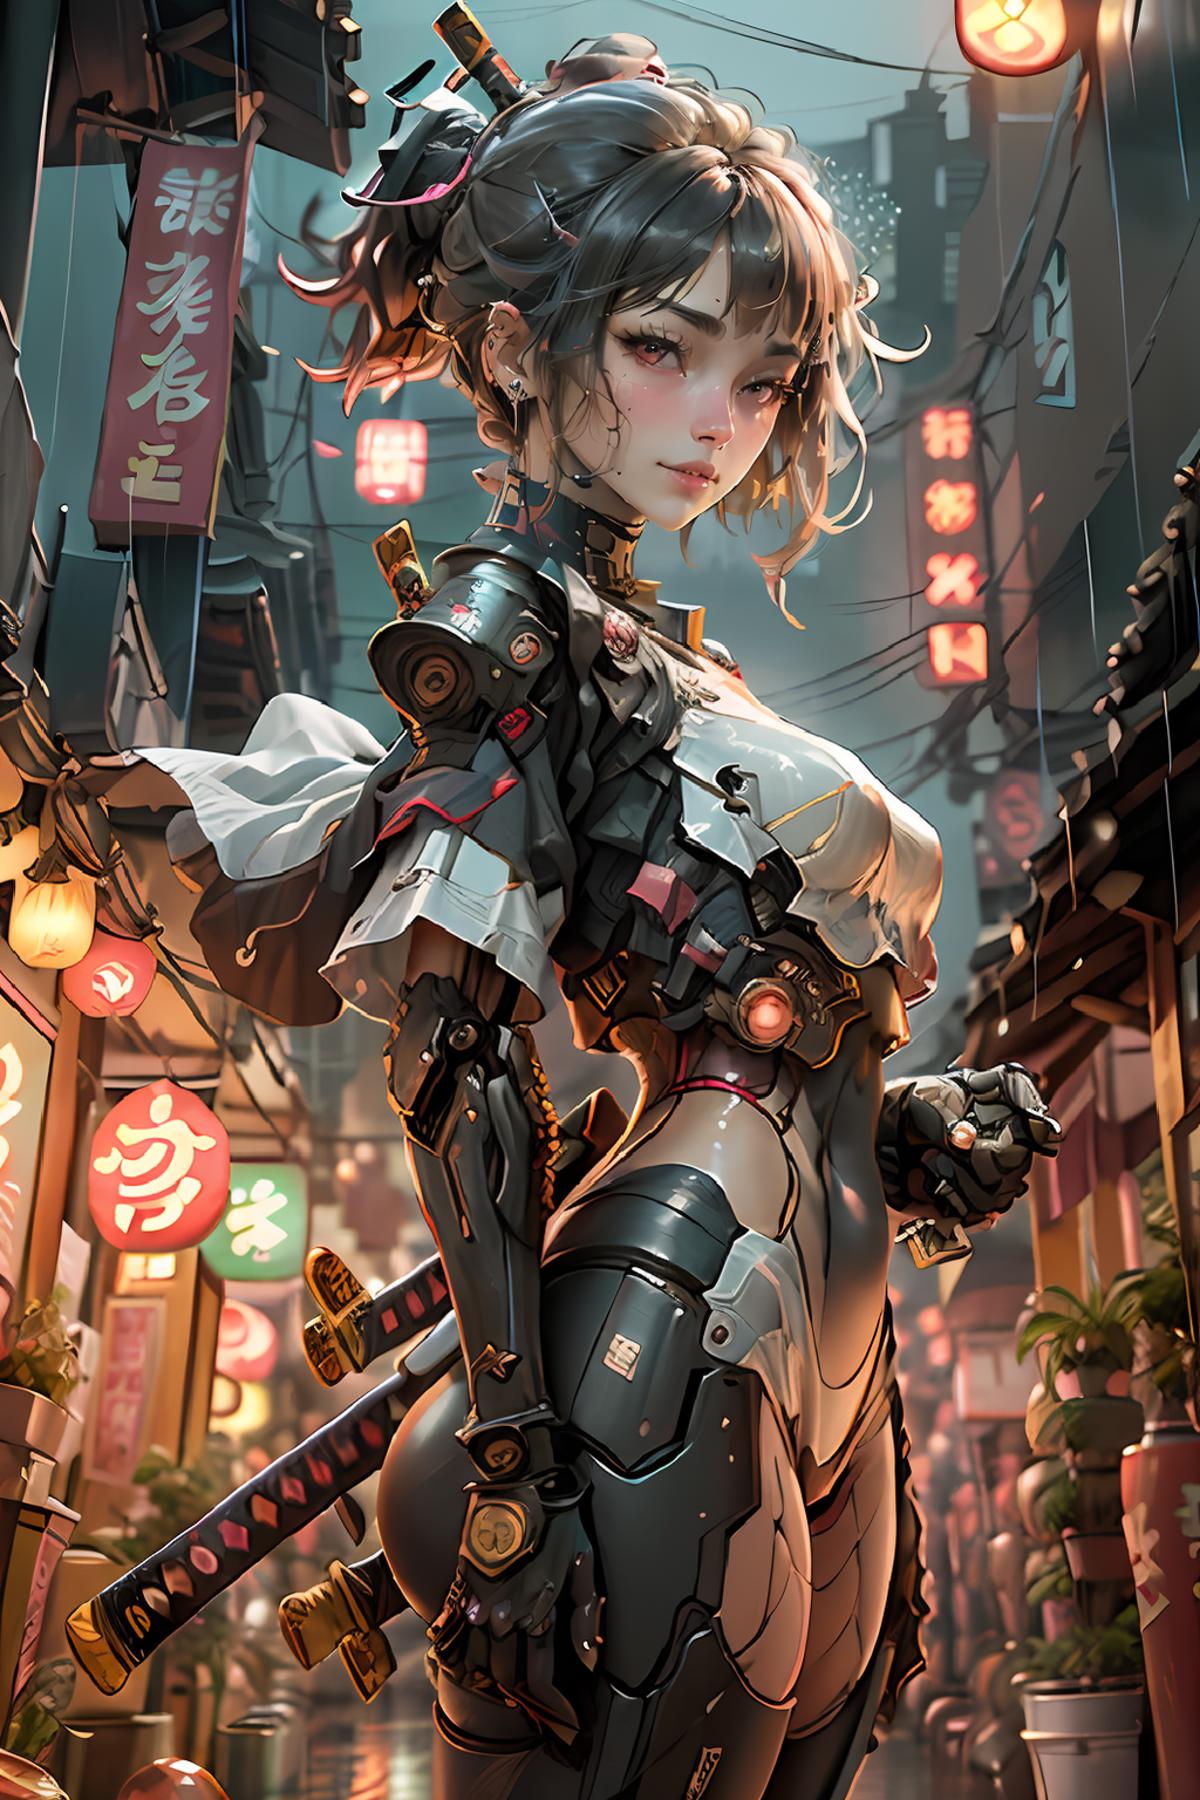 Samuraibot image by 0_vortex